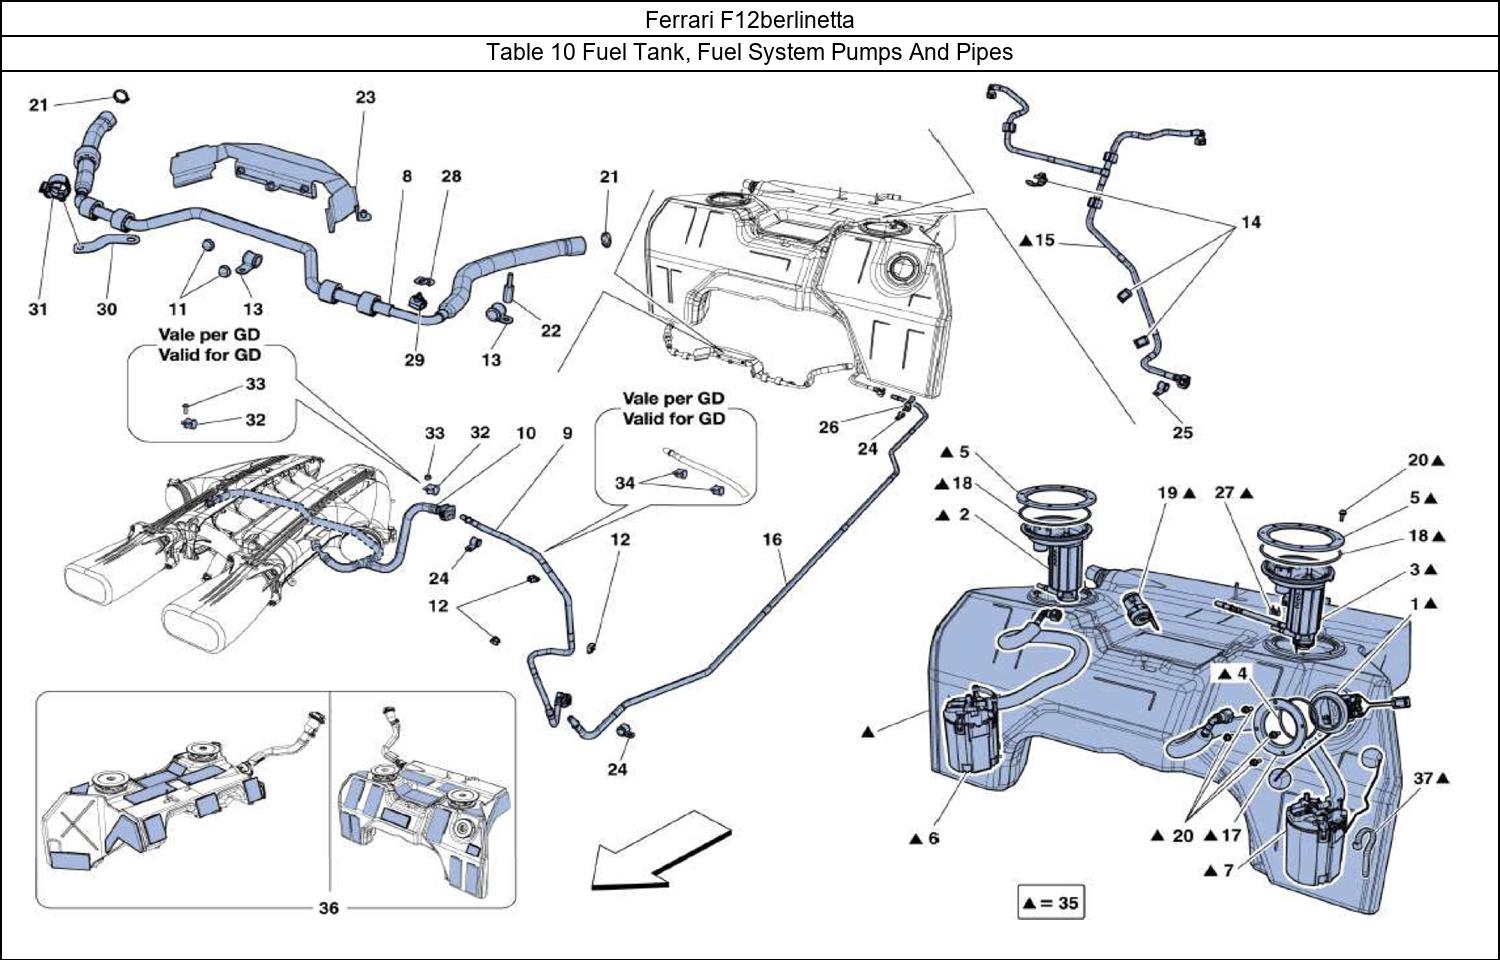 Ferrari Parts Ferrari F12berlinetta Table 10 Fuel Tank, Fuel System Pumps And Pipes